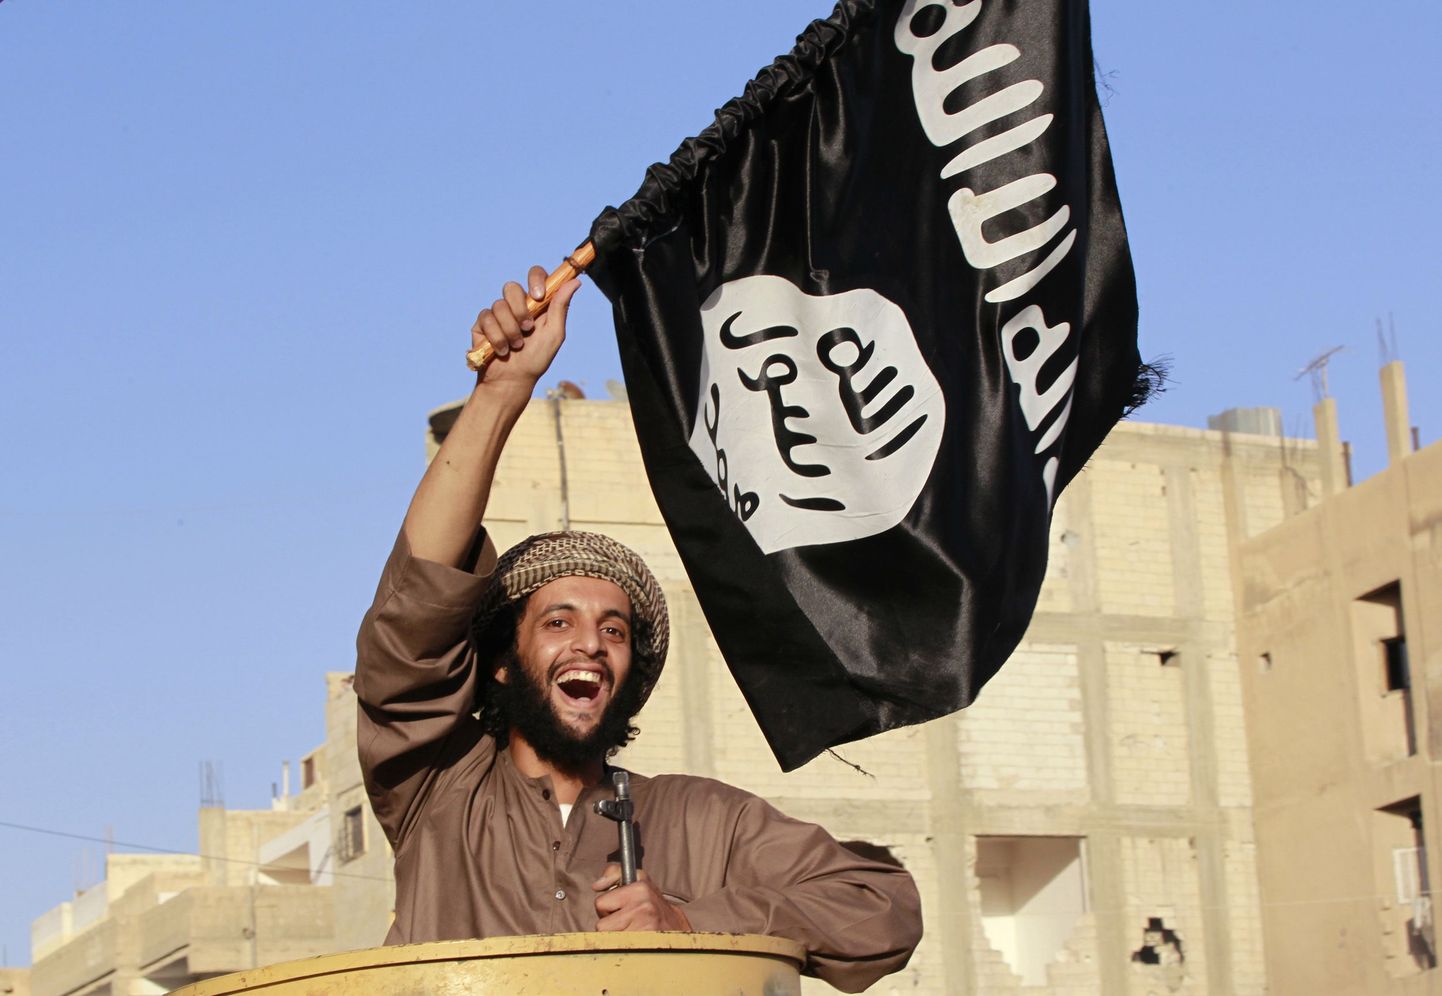 ISISe võitleja rühmituse lippu lehvitamas